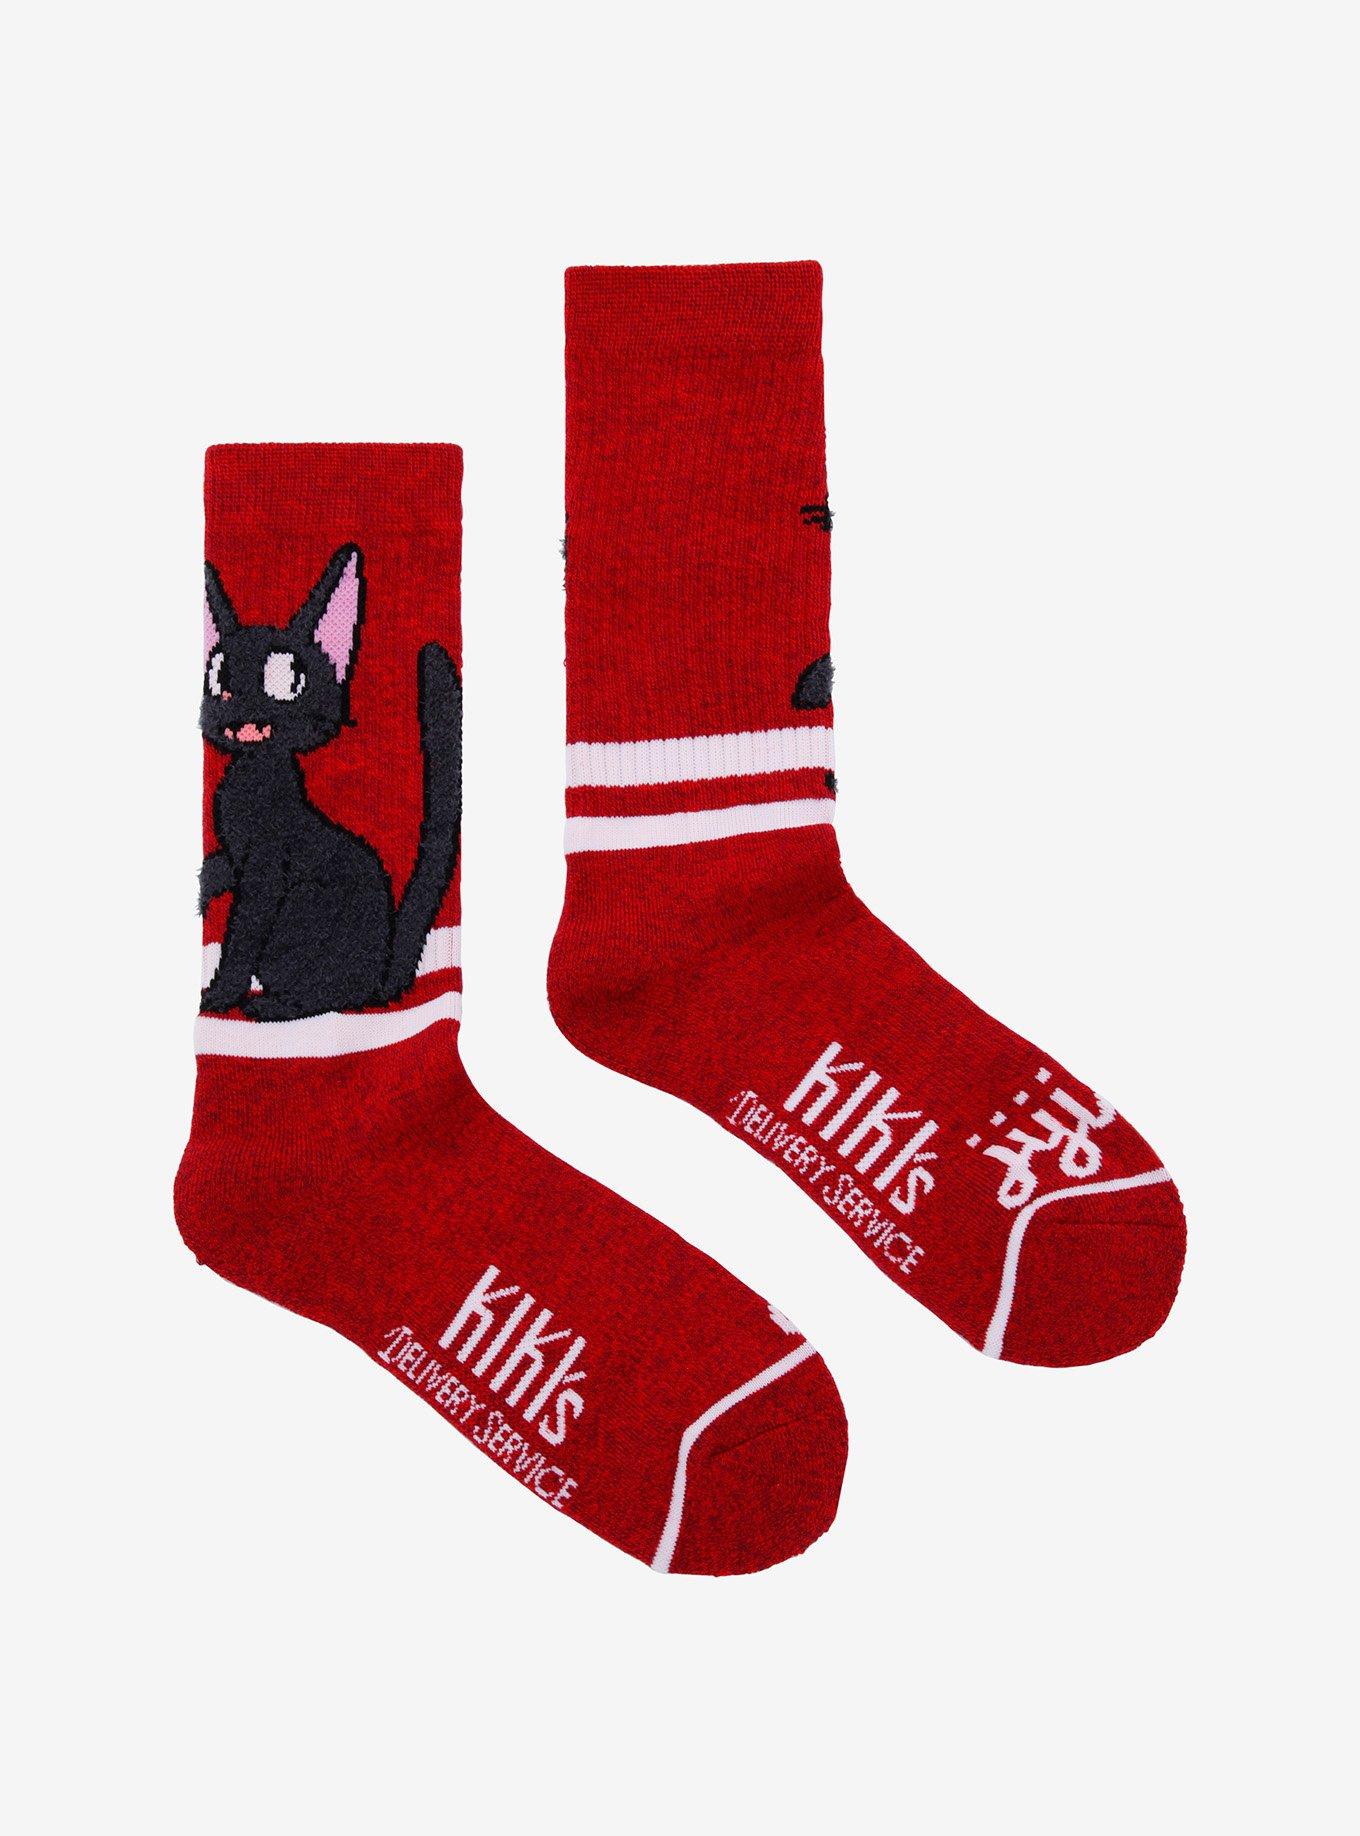 Studio Ghibli Kiki's Delivery Service Jiji Crew Socks, , alternate